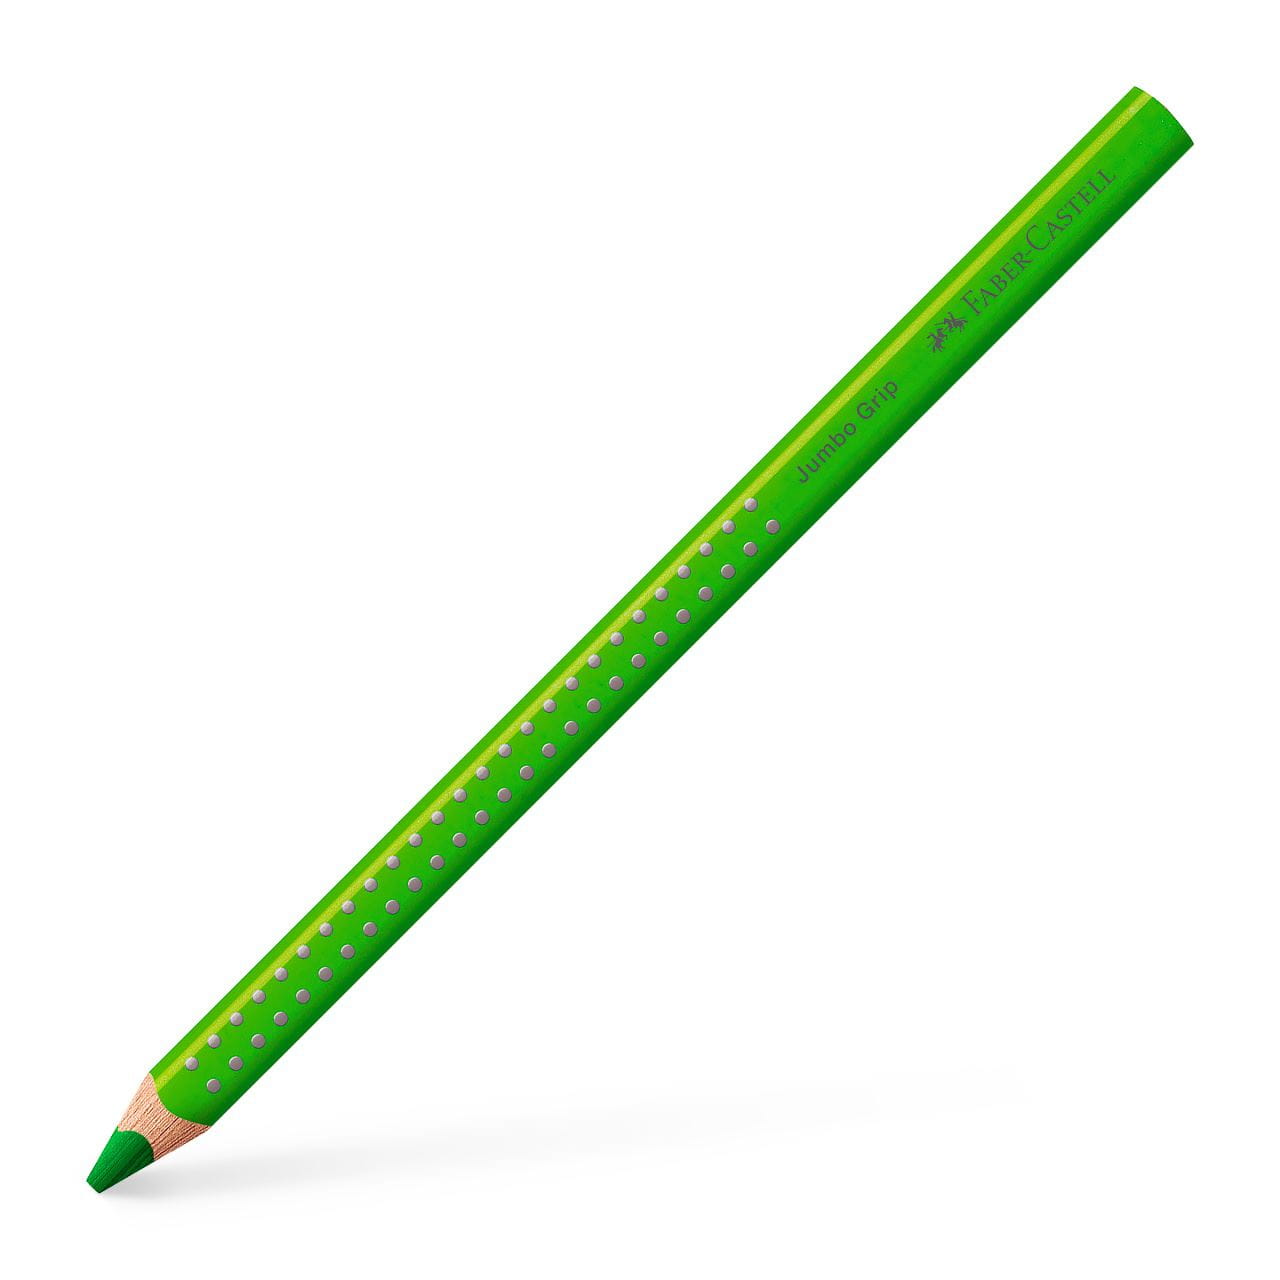 Faber-Castell - Crayon de couleur Jumbo Grip vert clair